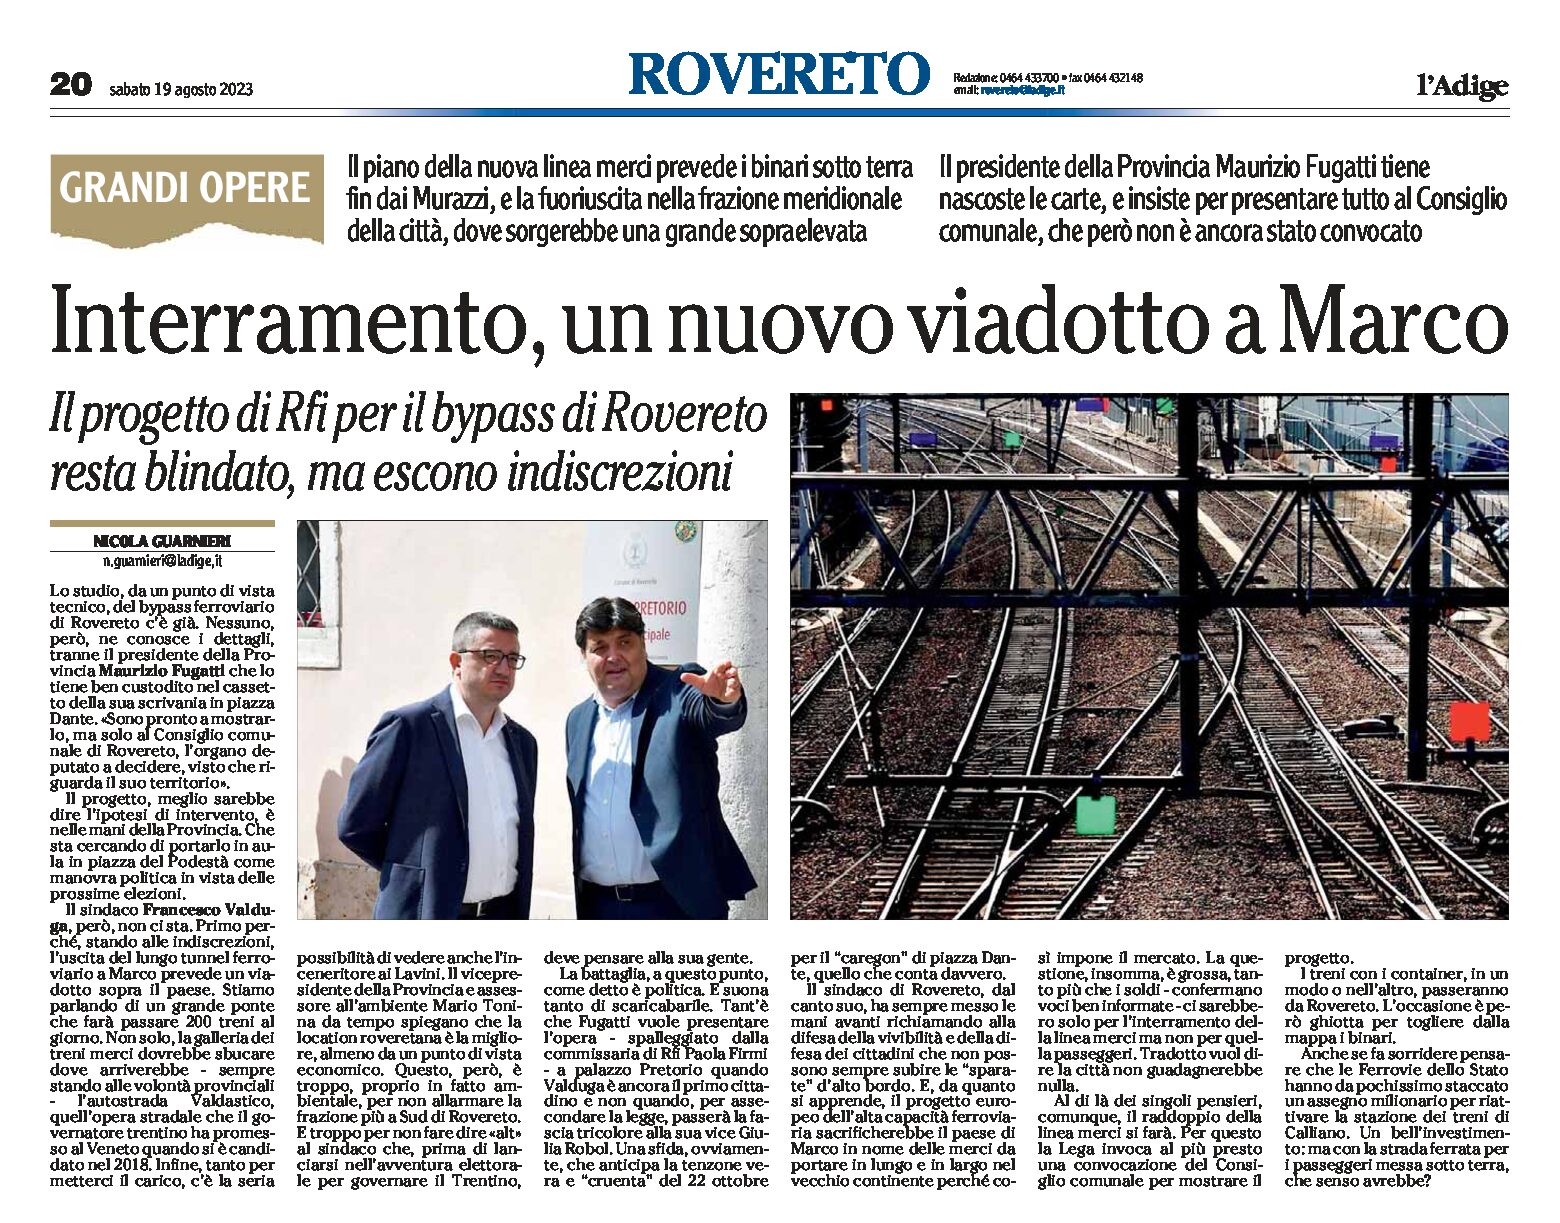 Rovereto: interramento, un nuovo viadotto a Marco. Il progetto di Rfi per il bypass resta blindato